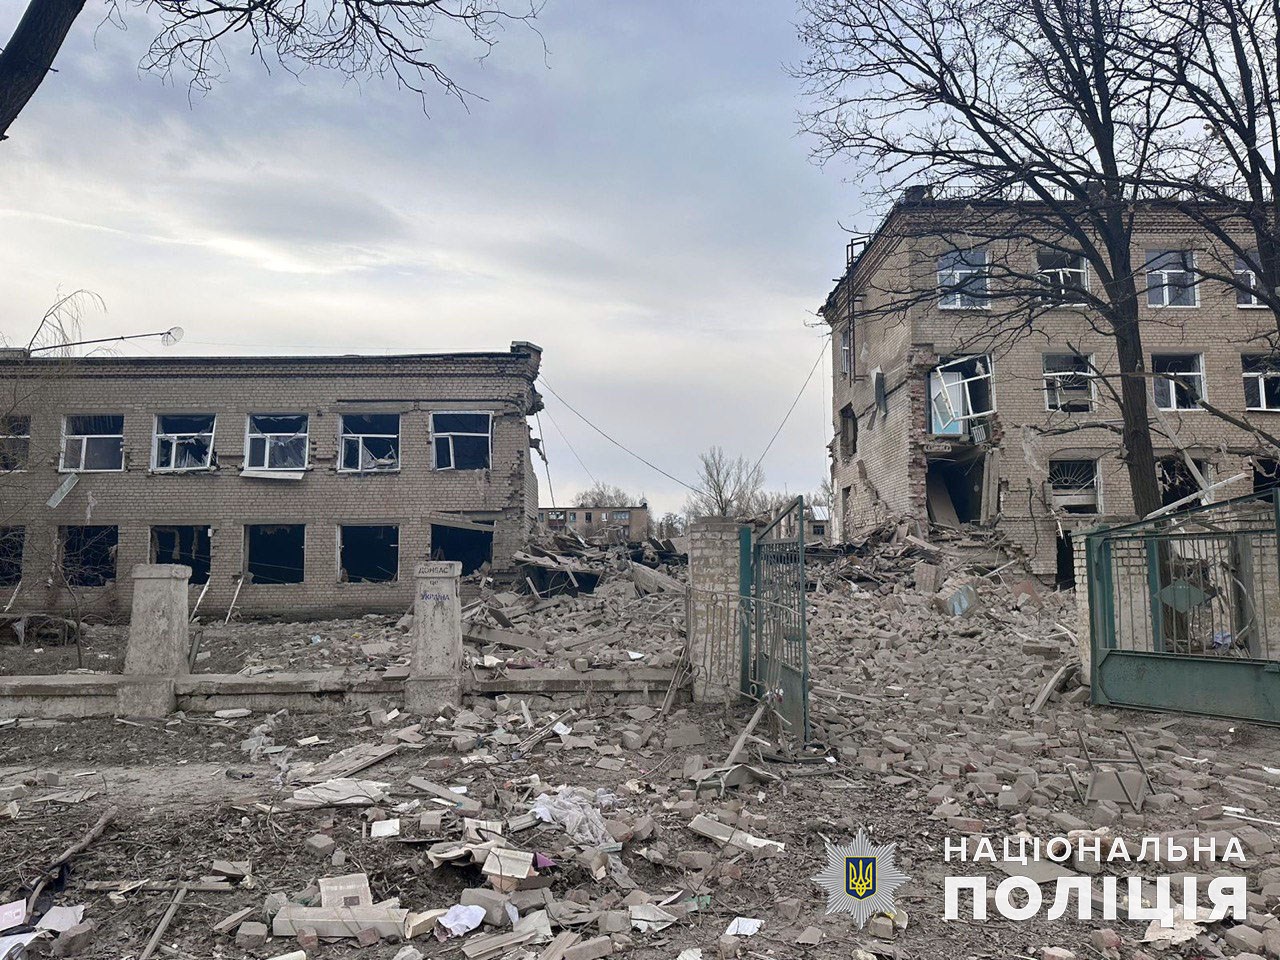 4 жители области погибли и столько же получили ранения: за сутки россияне обстреляли 32 города и села Донетчины 2